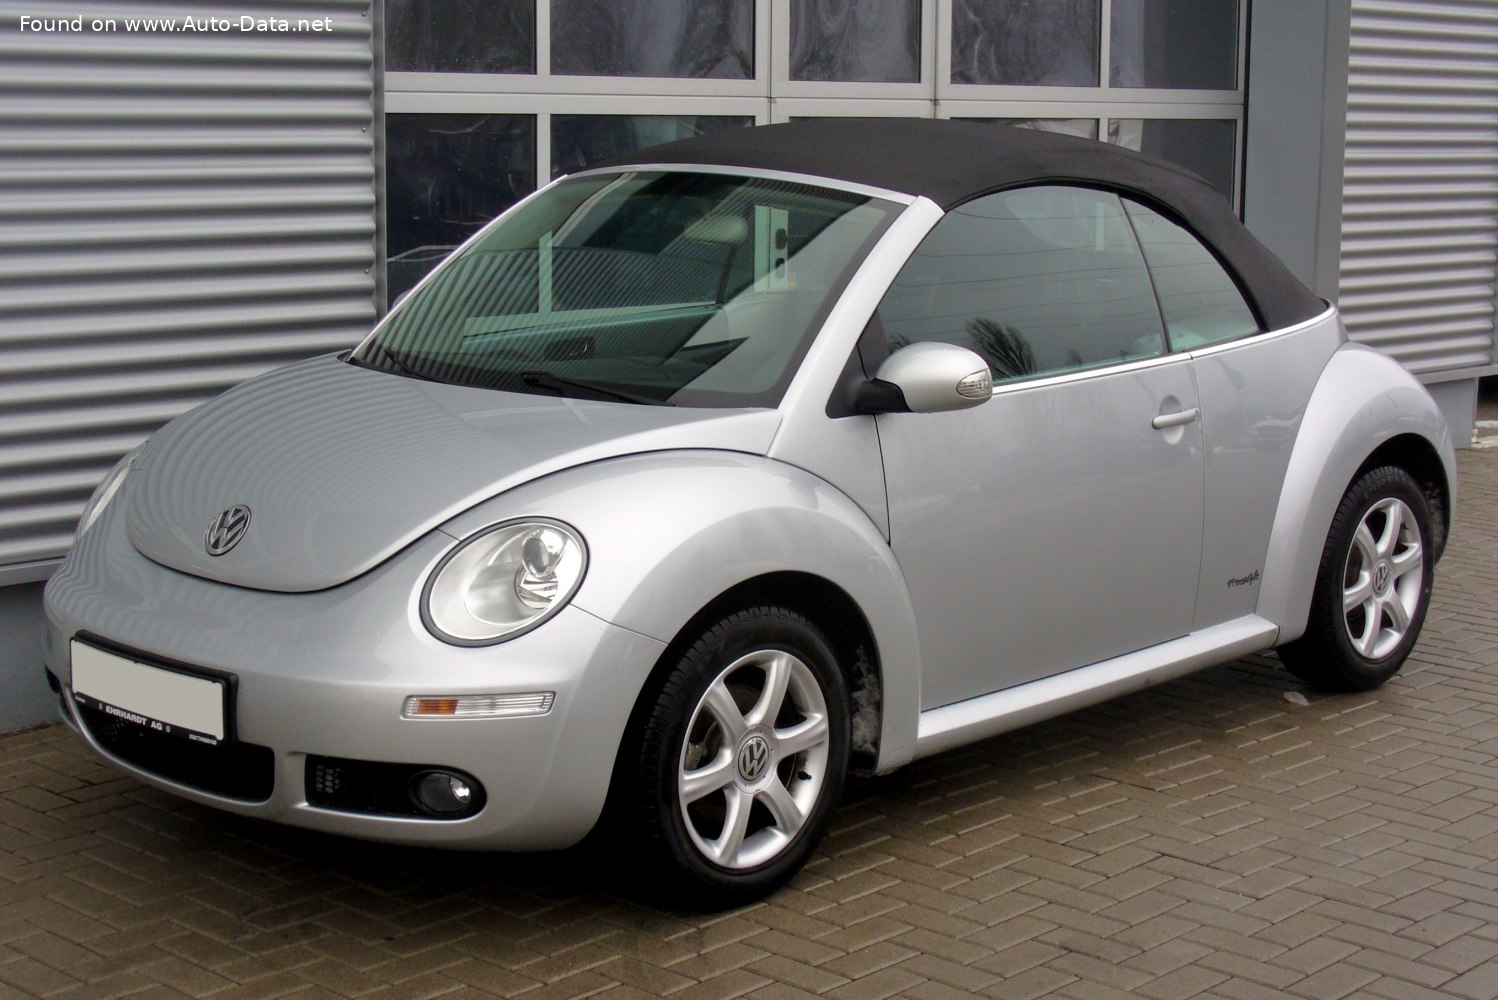 2006 volkswagen beetle